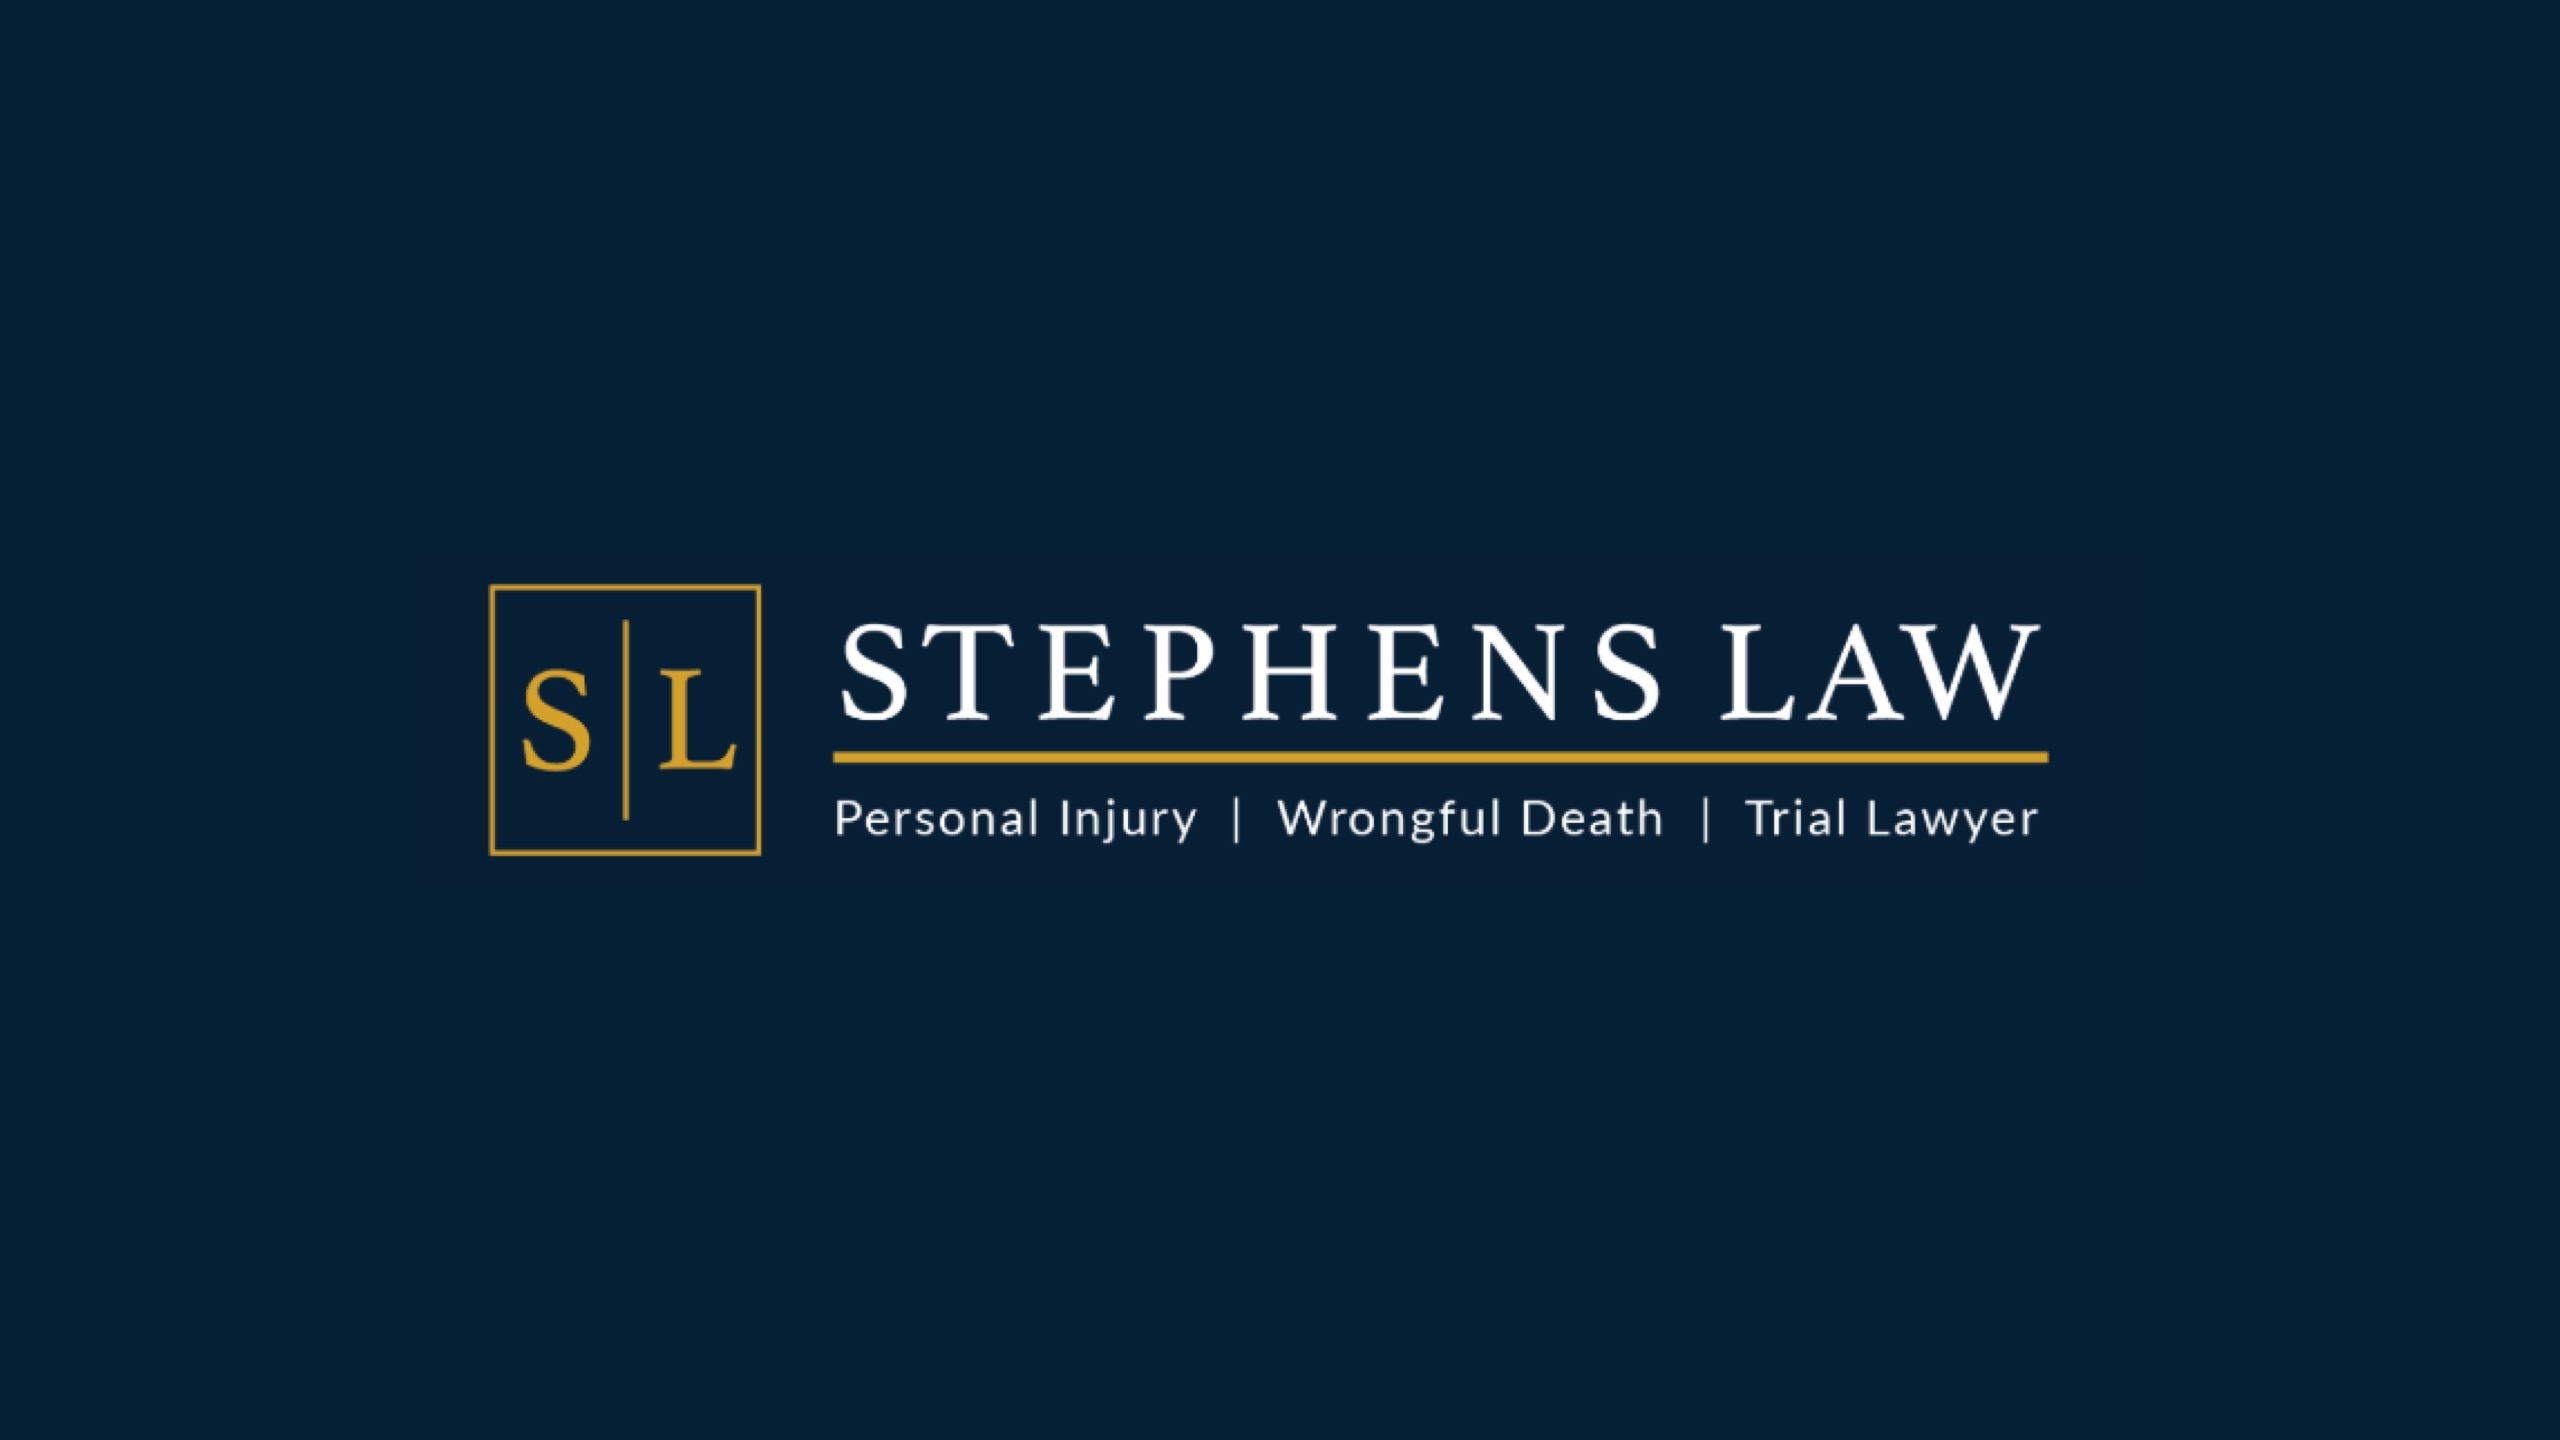 Stephens Law Firm, PLLC Logo